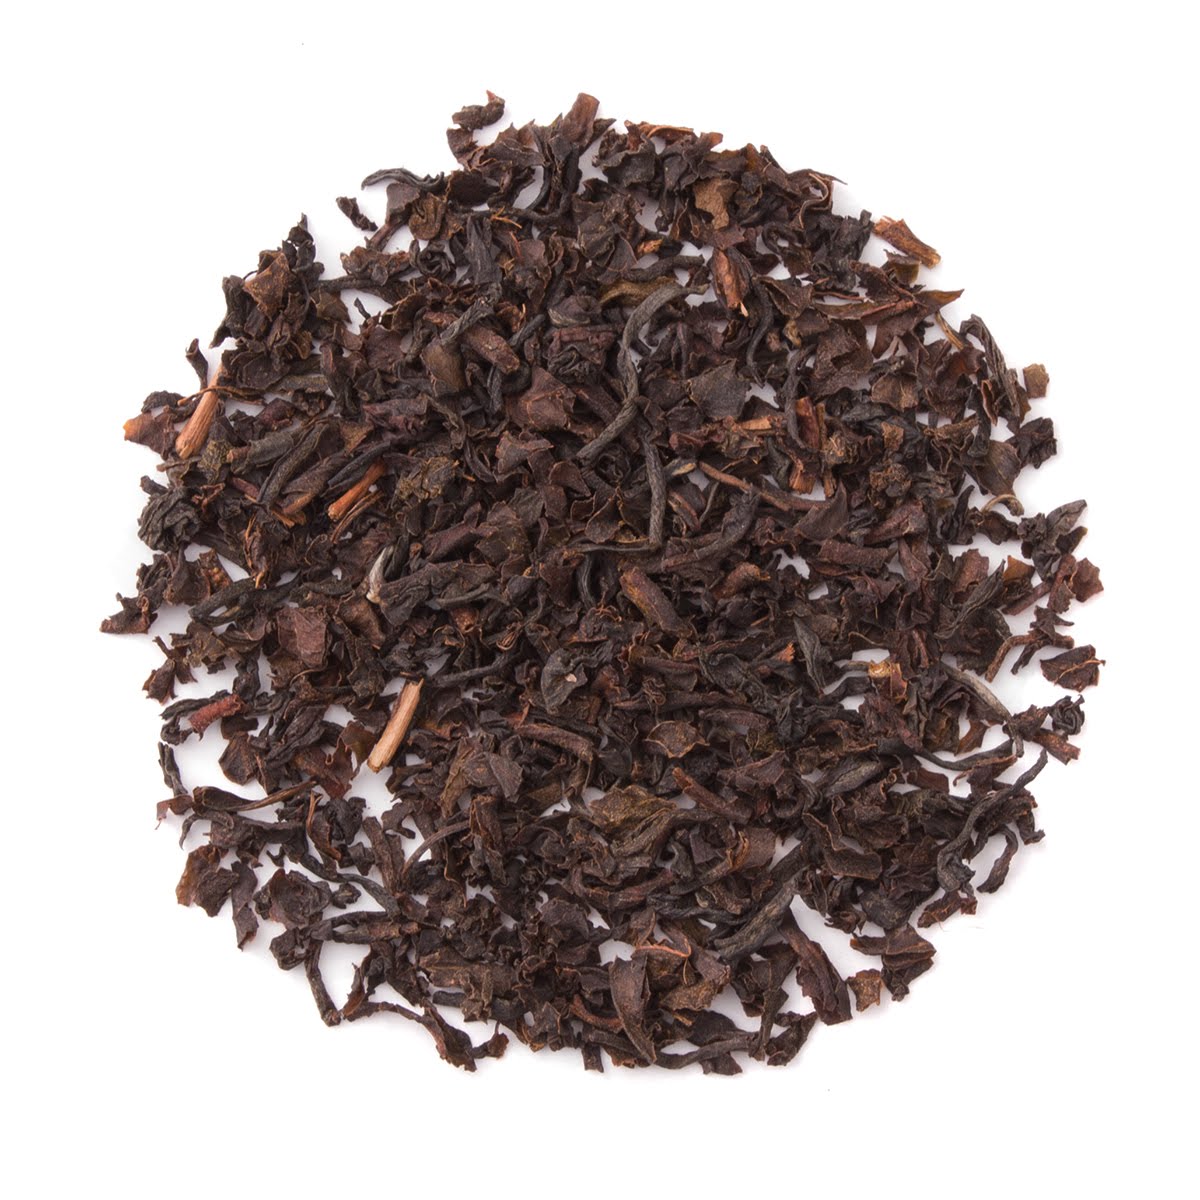 Organic English Breakfast - Loose Leaf Black Tea - Heavenly Tea Leaves